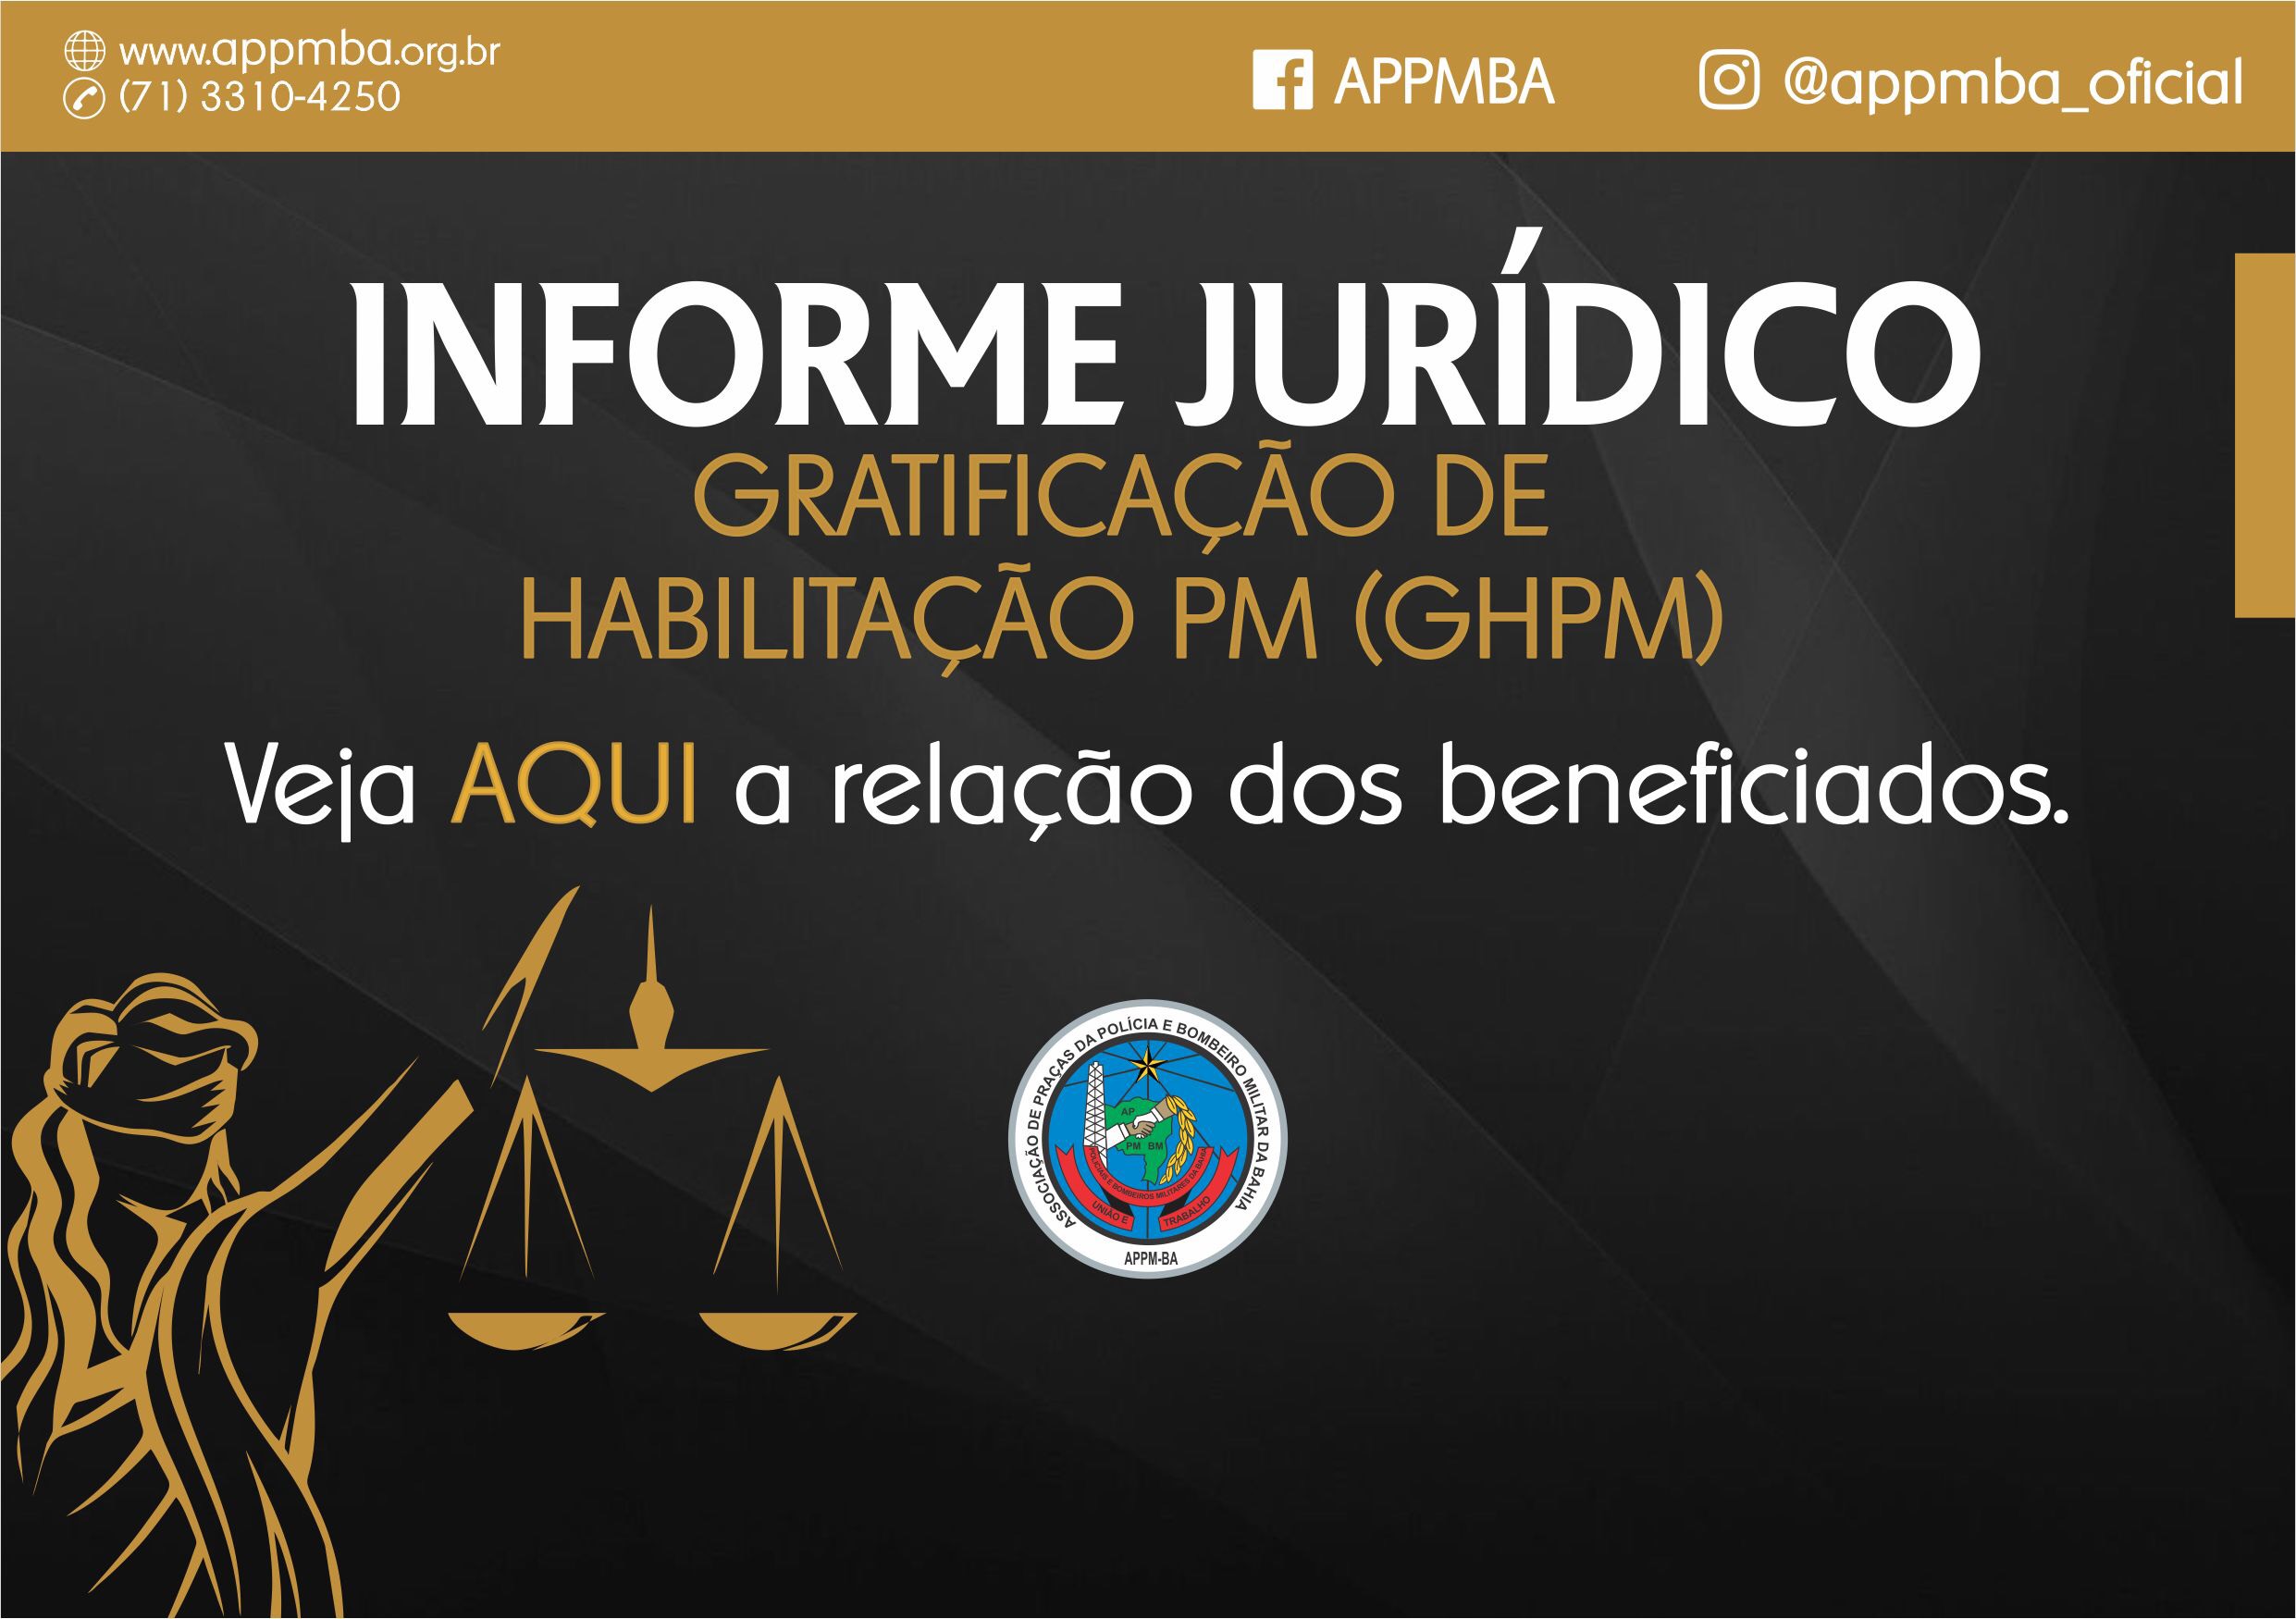 Justiça determina pagamento da Gratificação de Habilitação PM (GHPM)